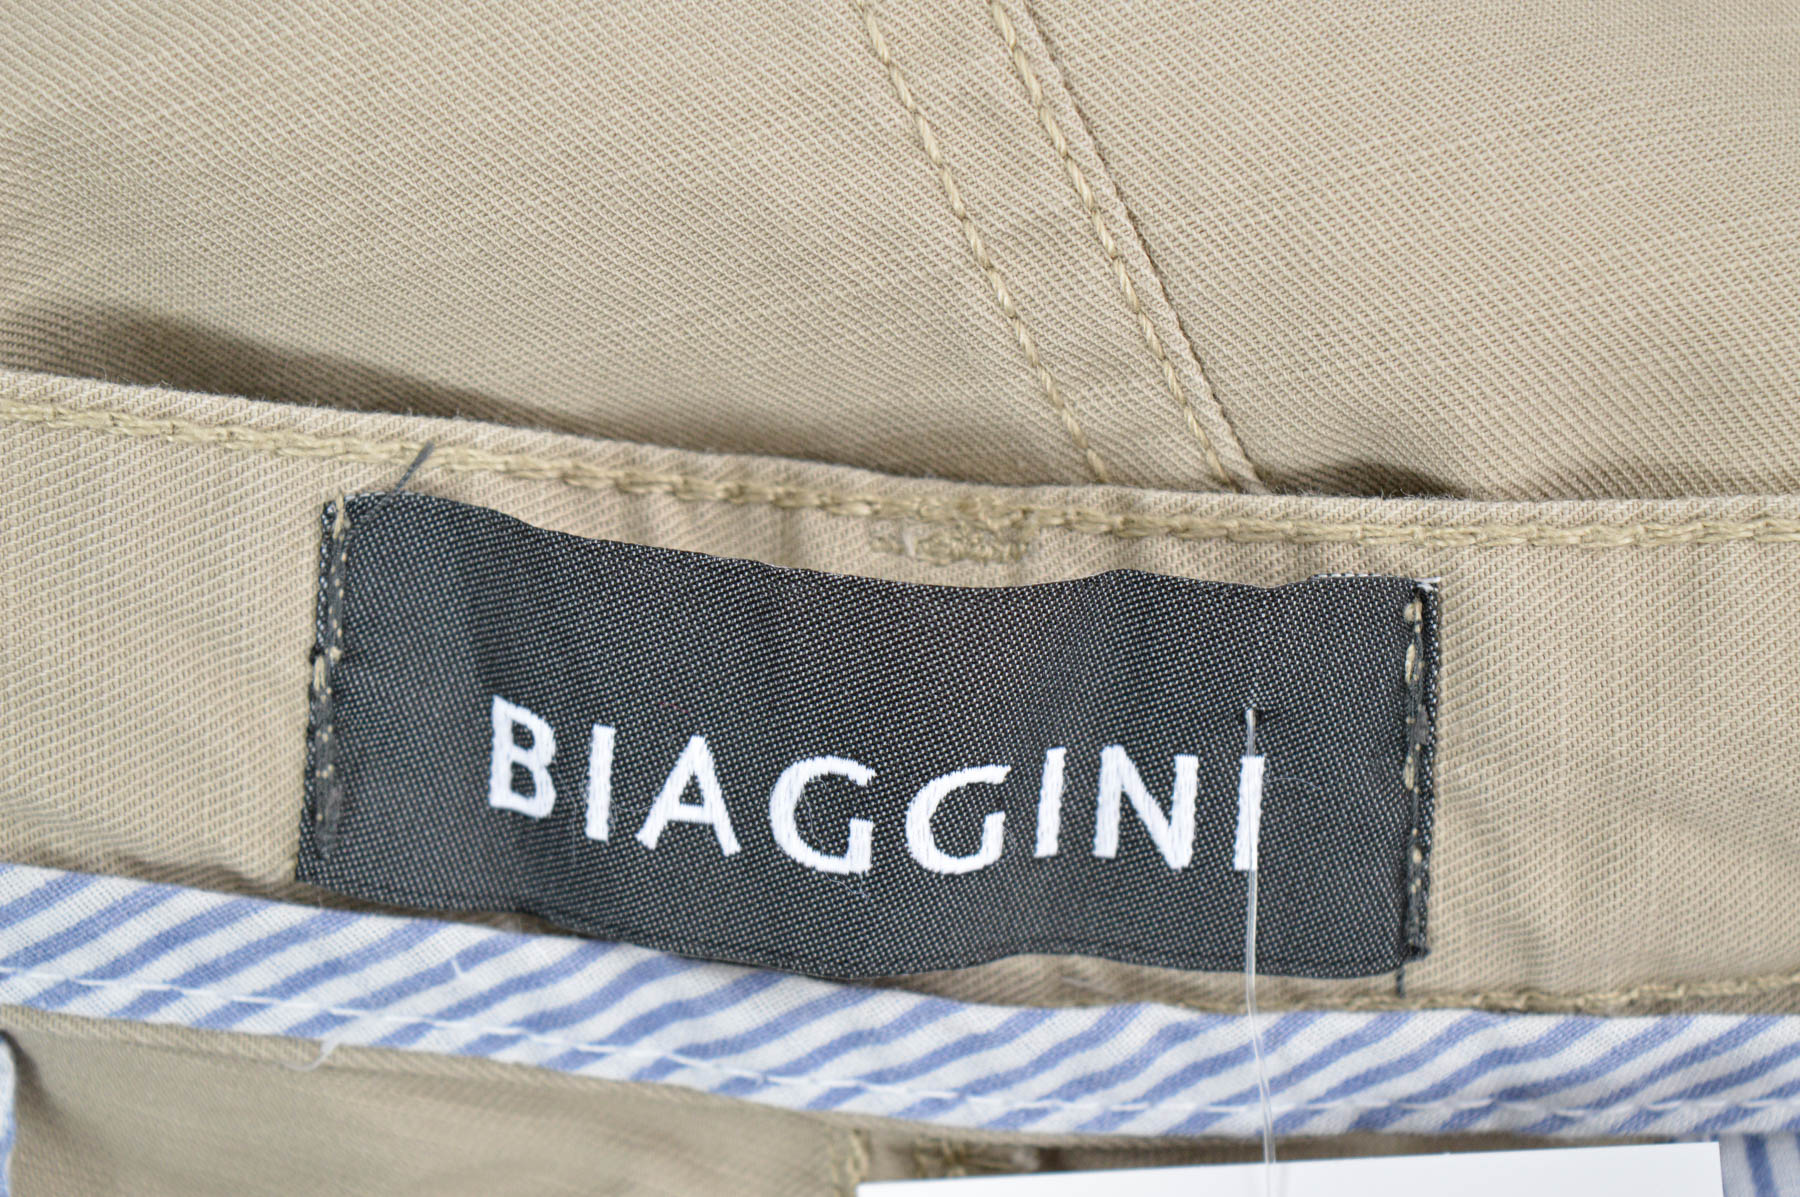 Men's shorts - Biaggini - 2